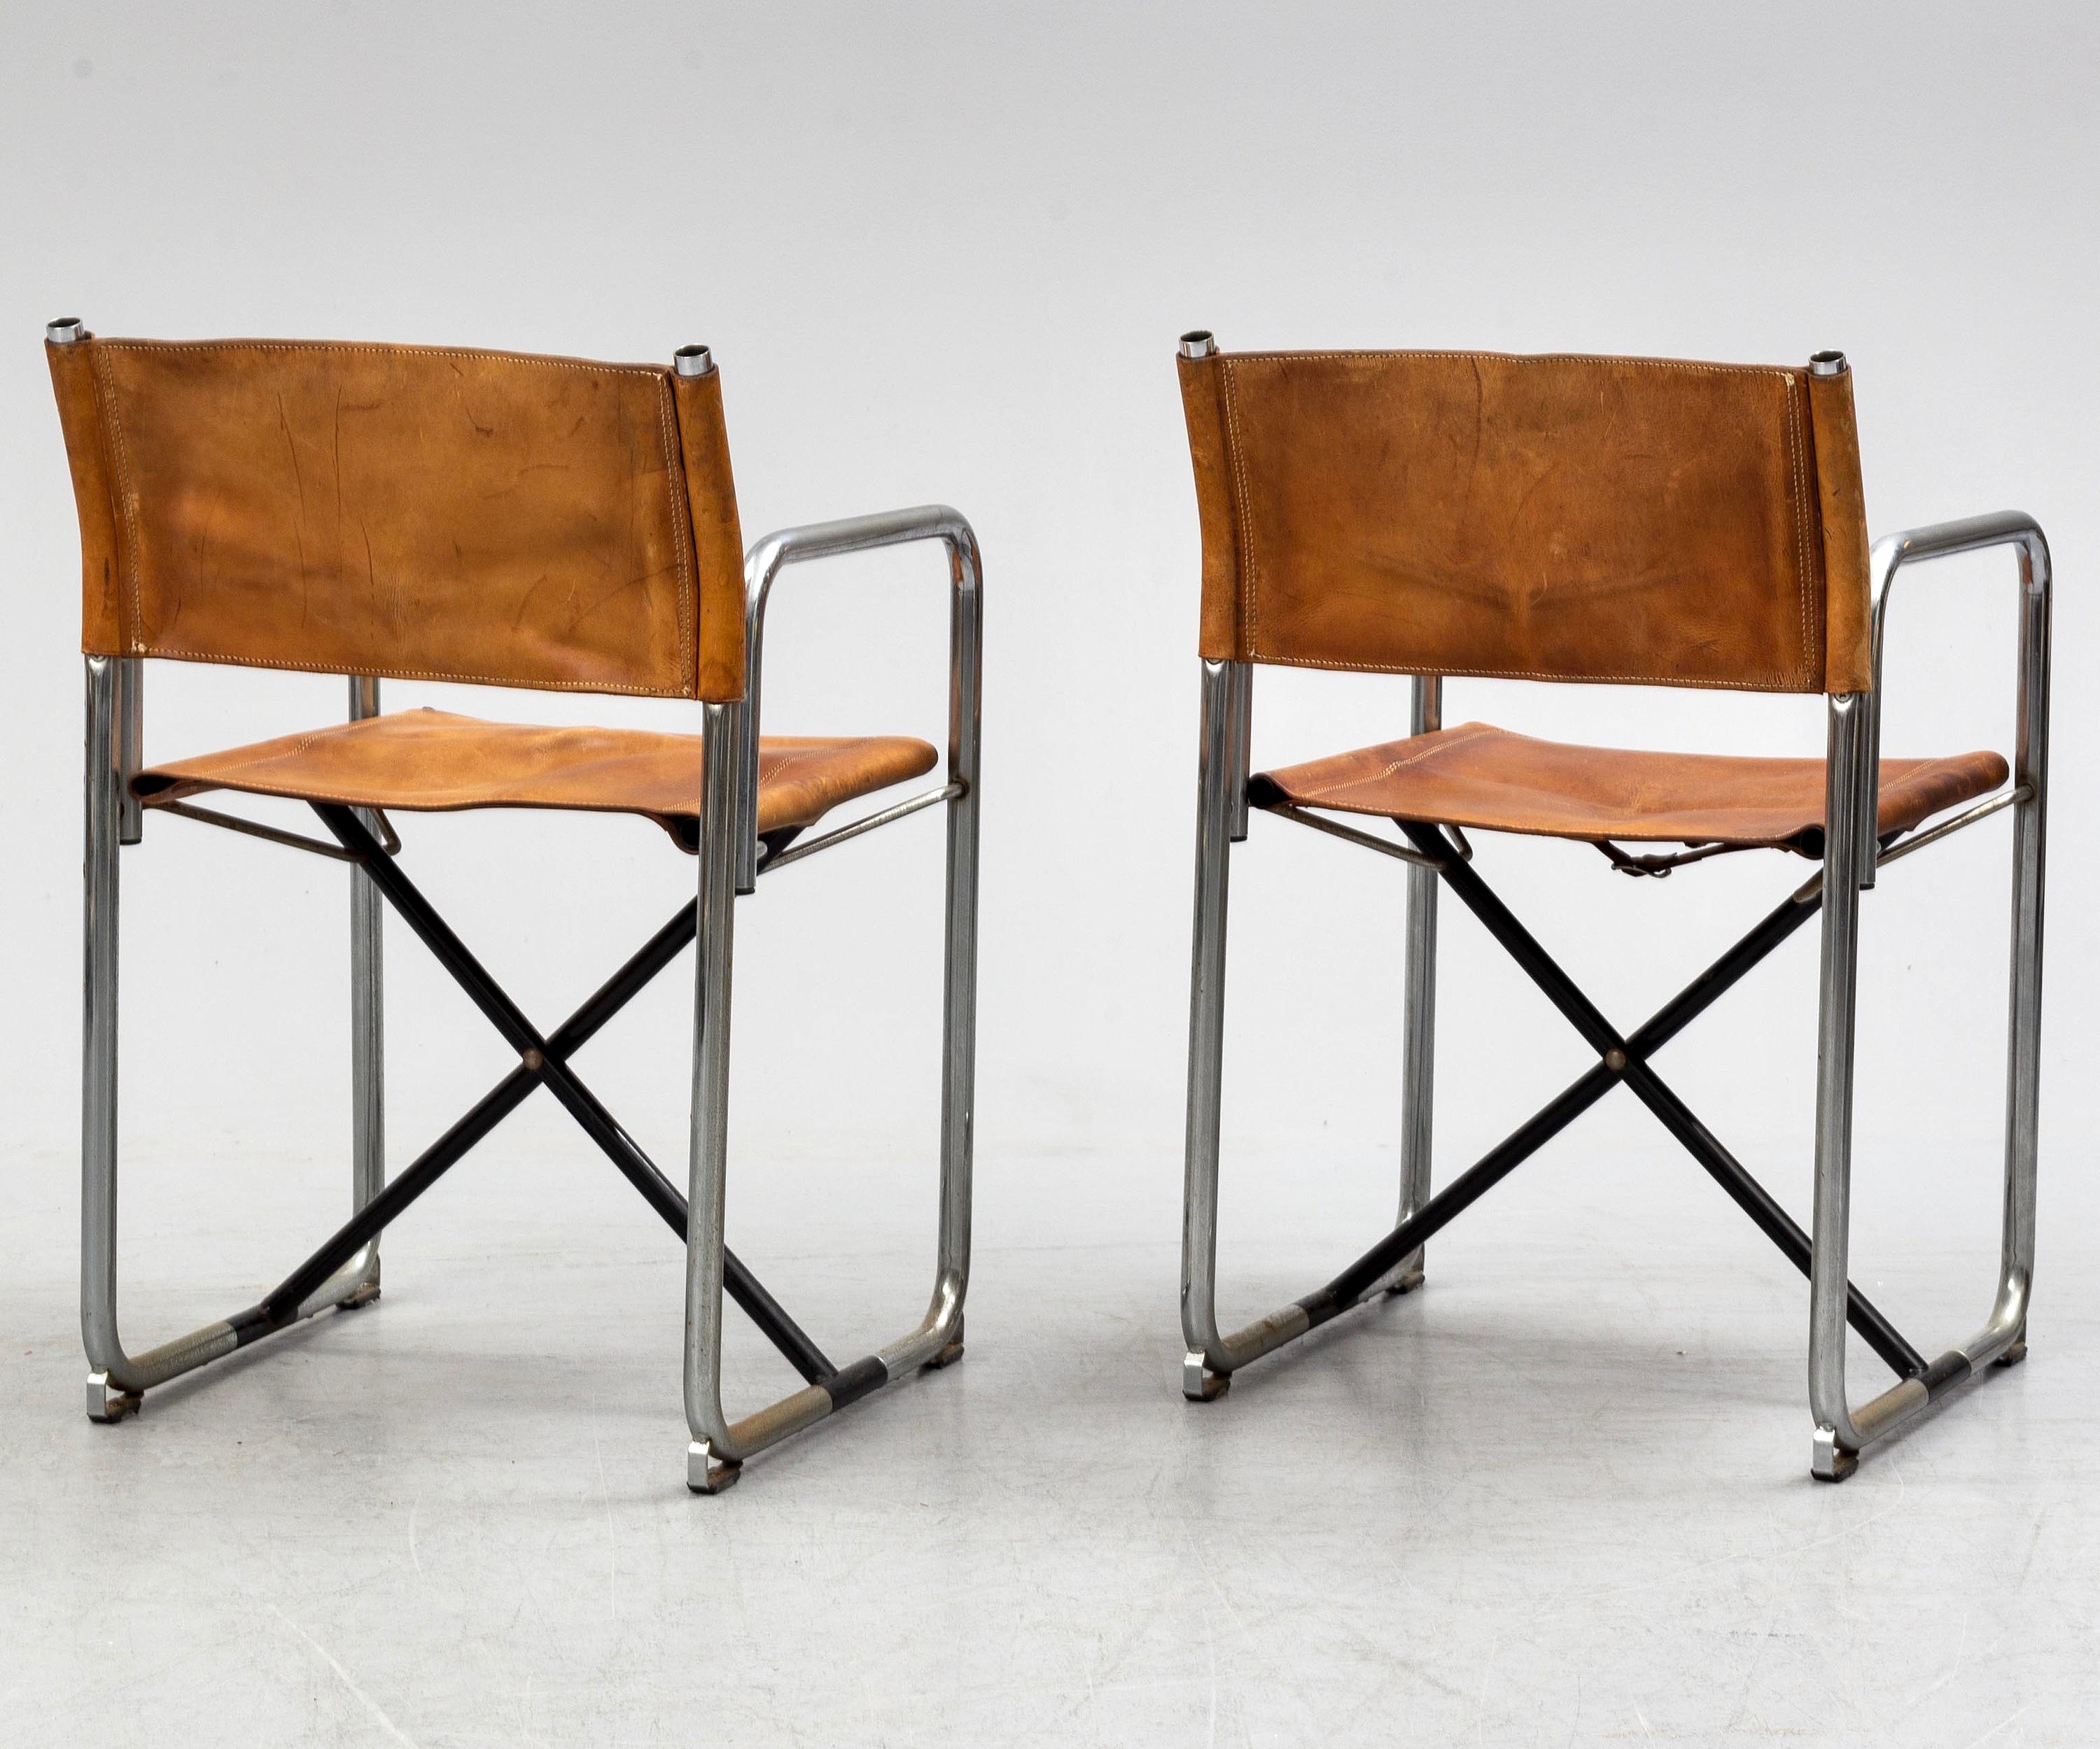 Steel Borge Lindau & Bo Lindekrantz Leather Folding Chairs, Sweden 1965, Set of 4